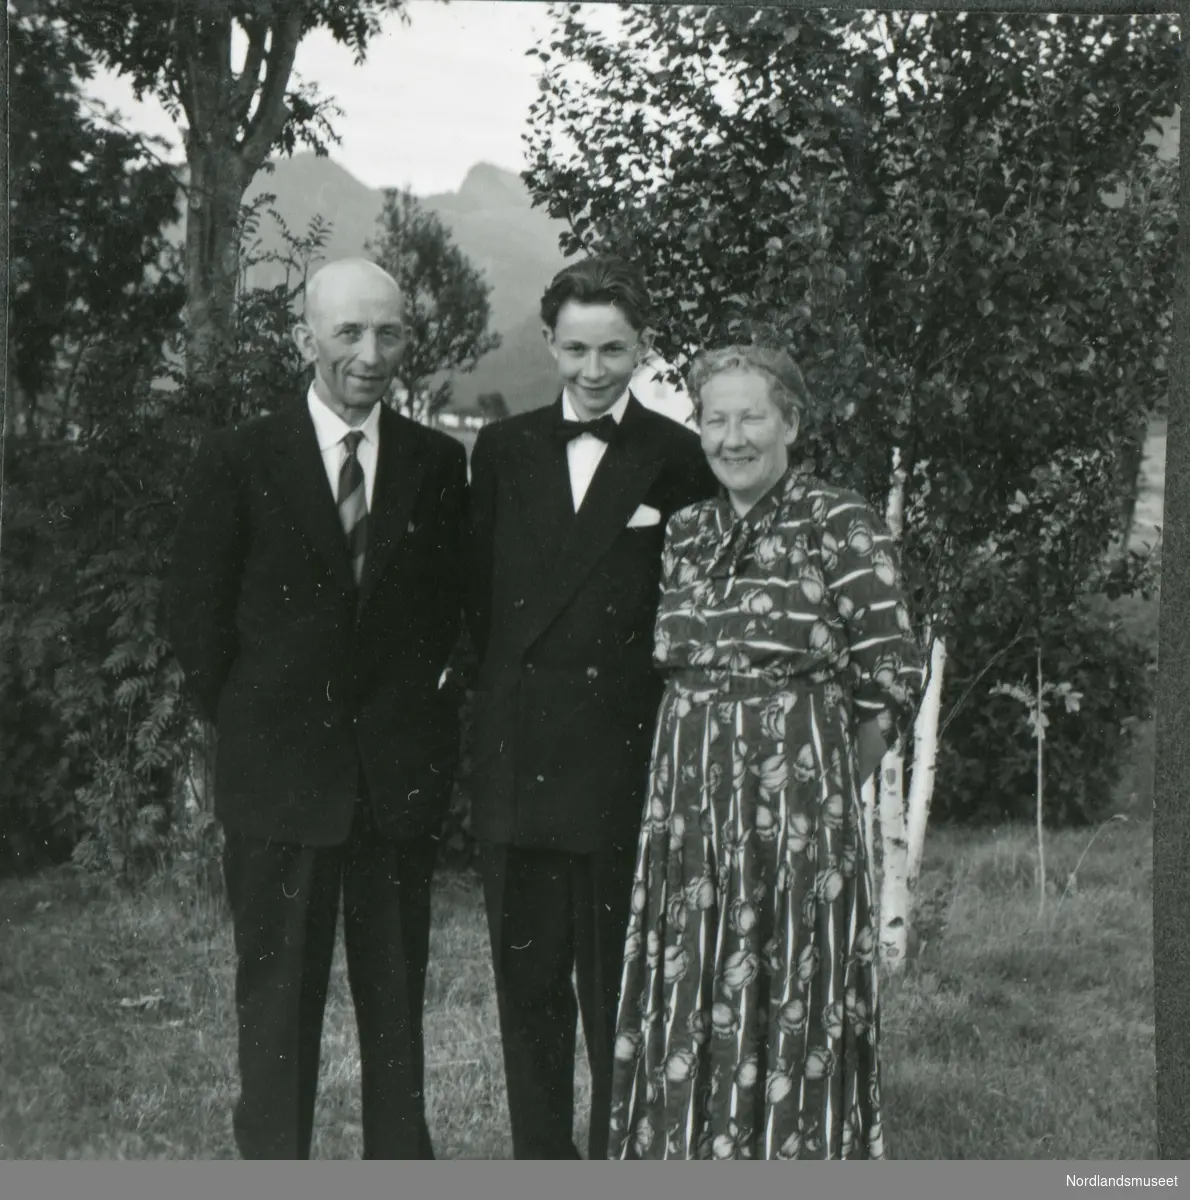 Konfirmasjon i Leiranger kirke 1. aug. 1954. Konfirmanten Sverre og foreldrene Olga og Hilmar Olsen